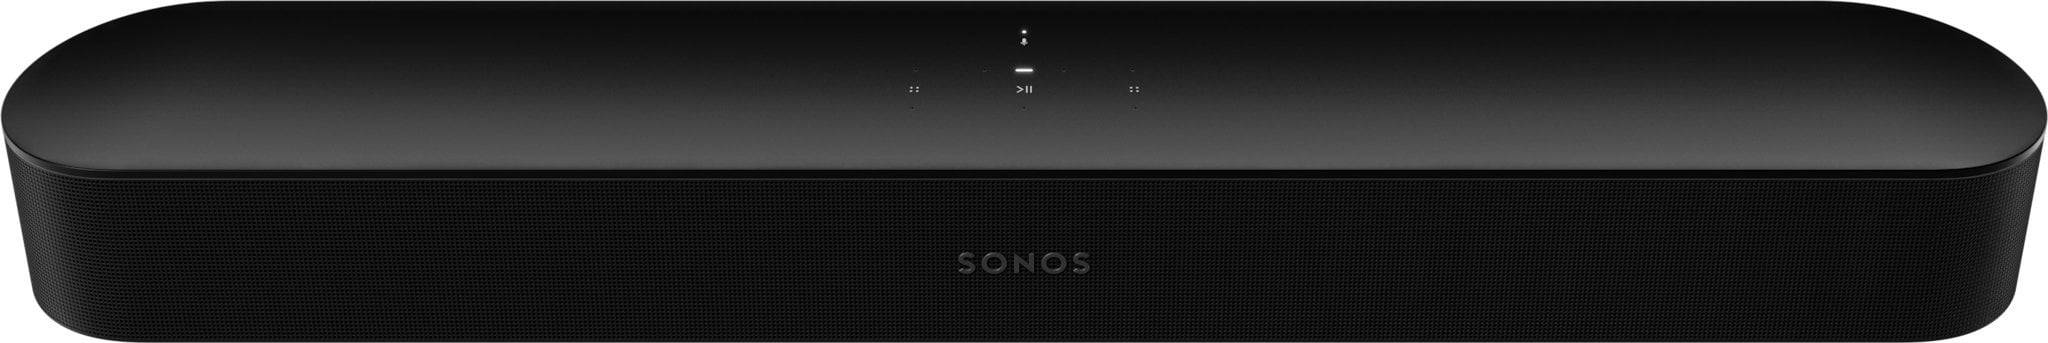 Soundbar - Soundbar Sonos BEAM2EU1BLK